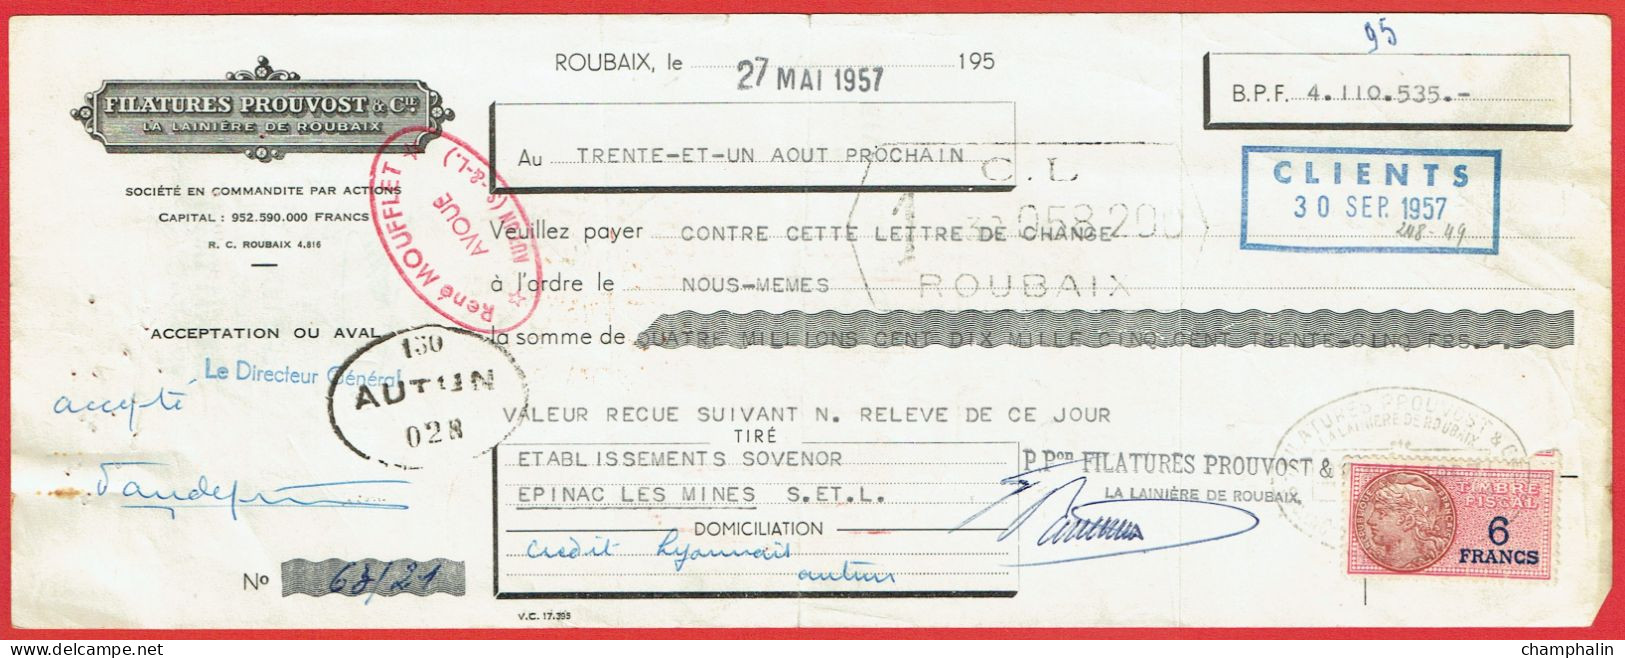 Lot 8 Lettres De Change De Roubaix (59) Pour Epinac-les-Mines (71) - 1957 - Timbre TF N°439-440 - Filatures Prouvost - Wissels